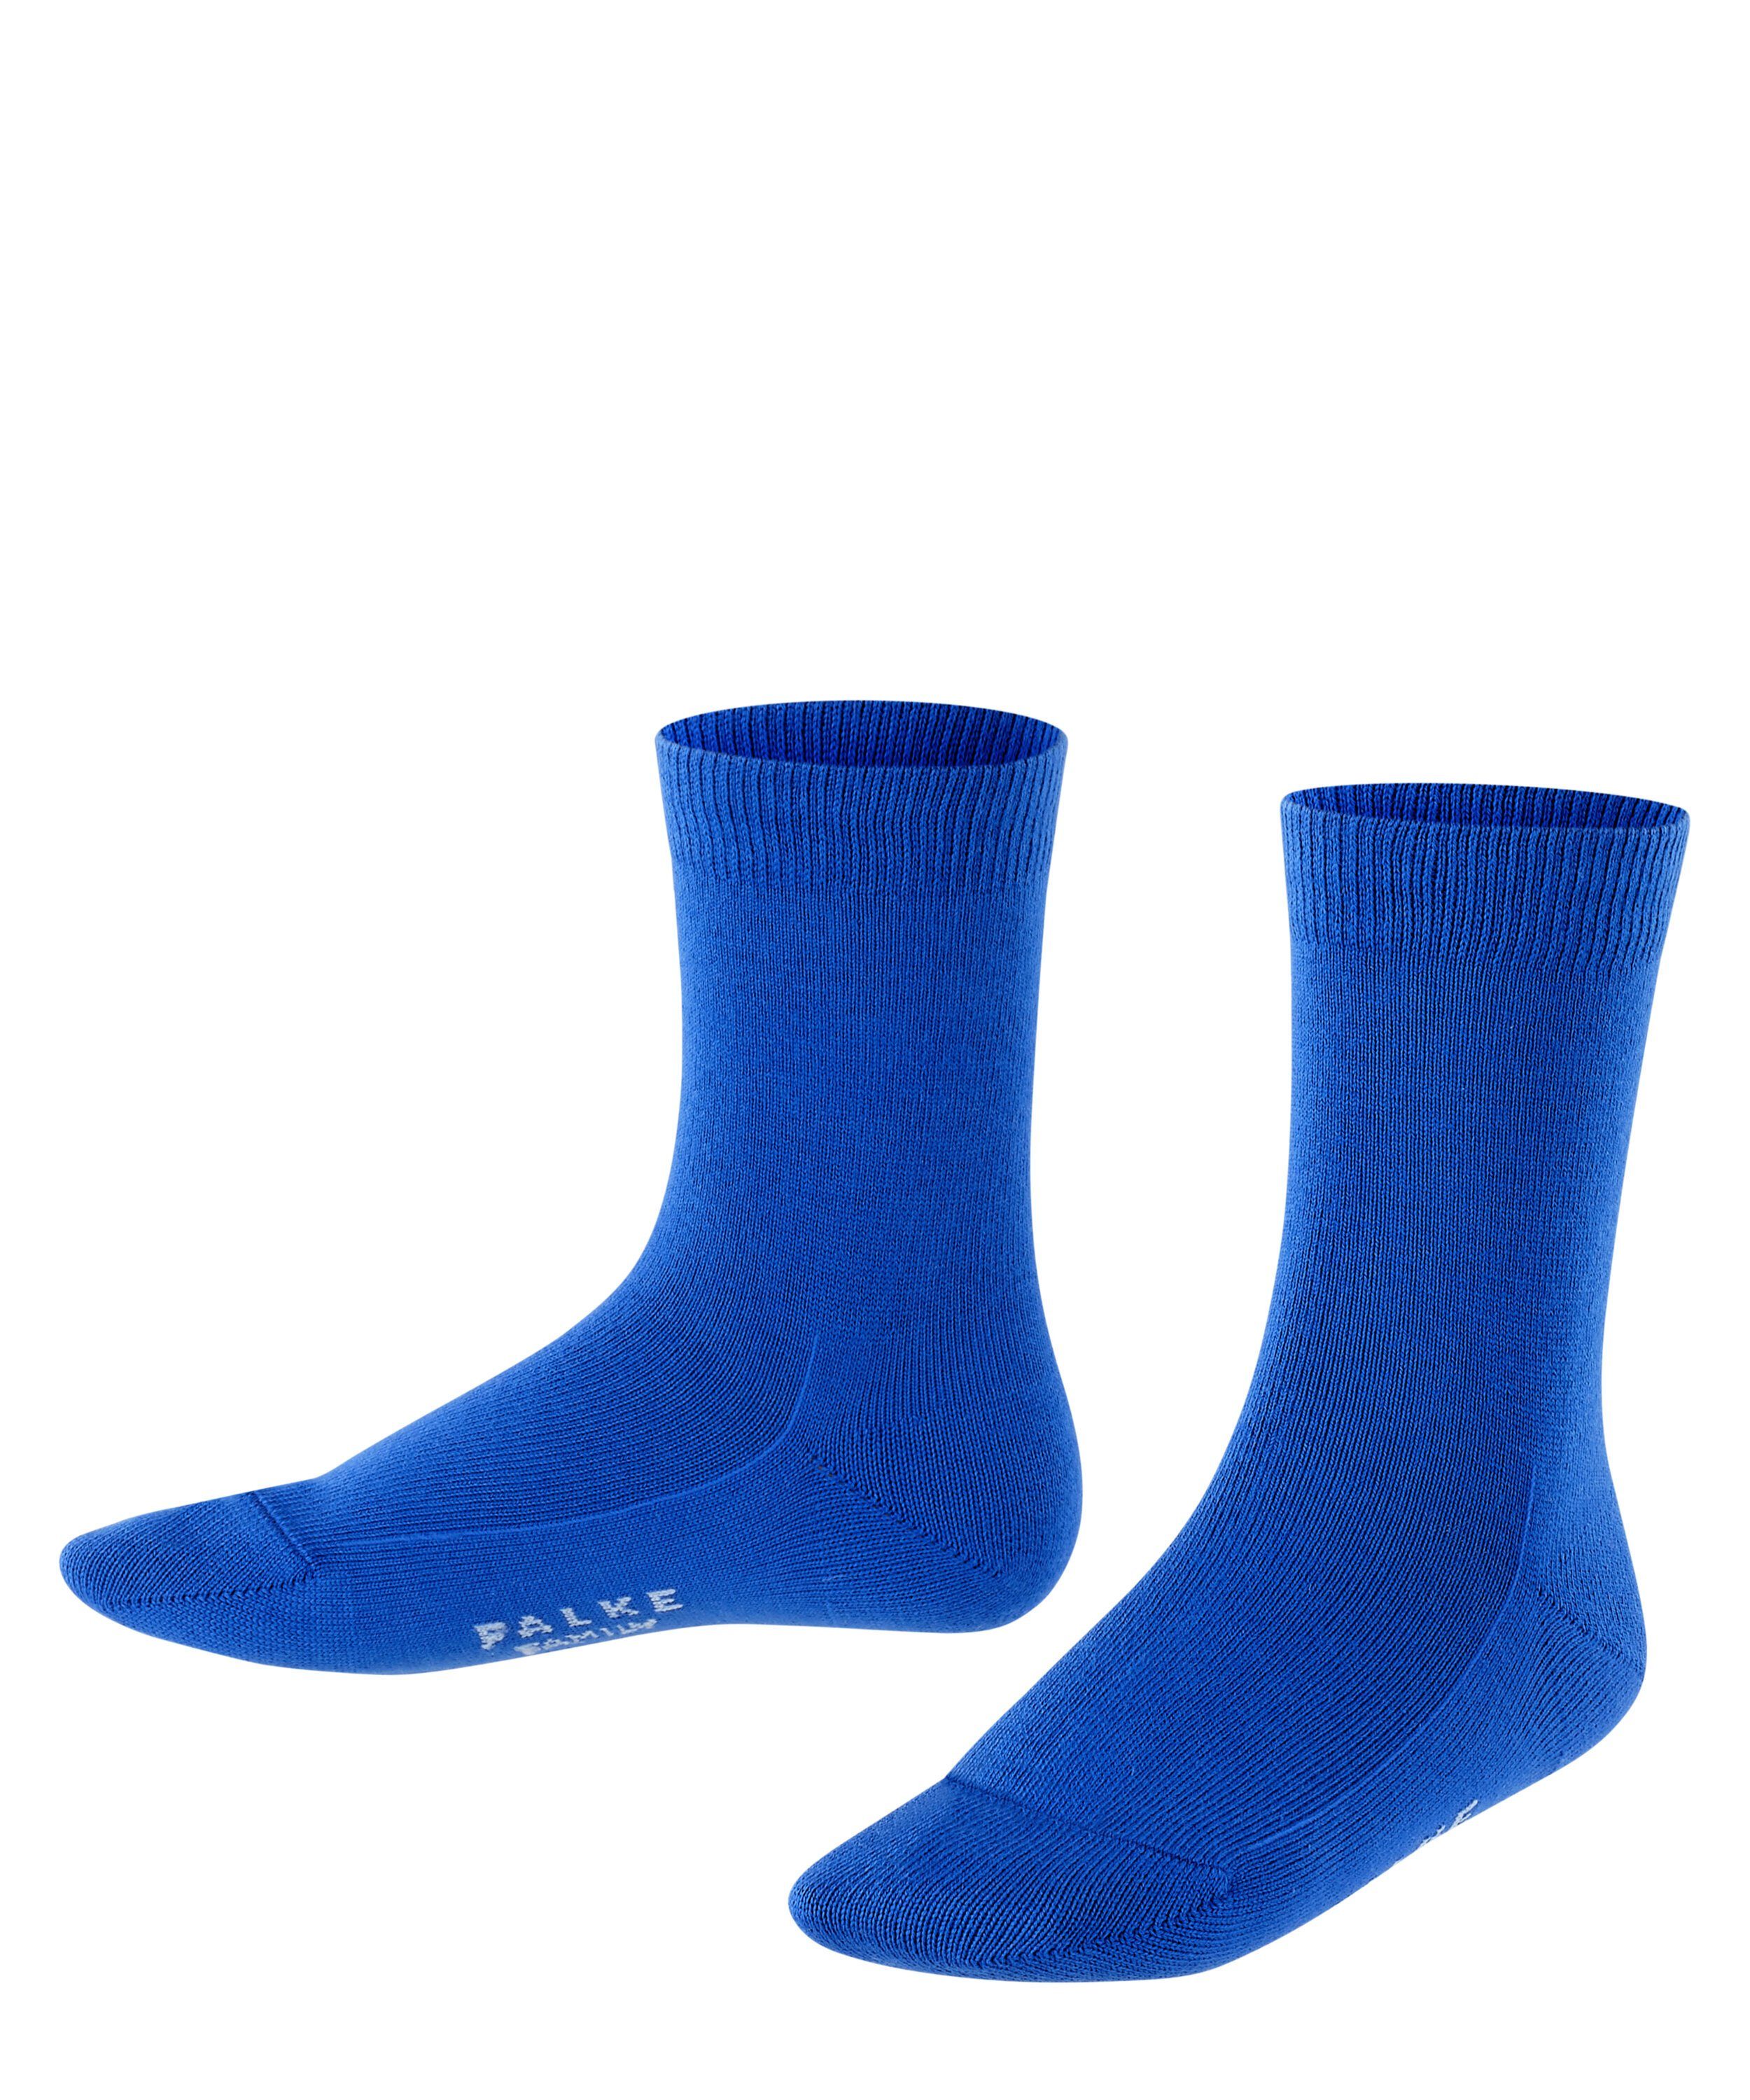 FALKE Socken Family (1-Paar) cobalt blue (6054)